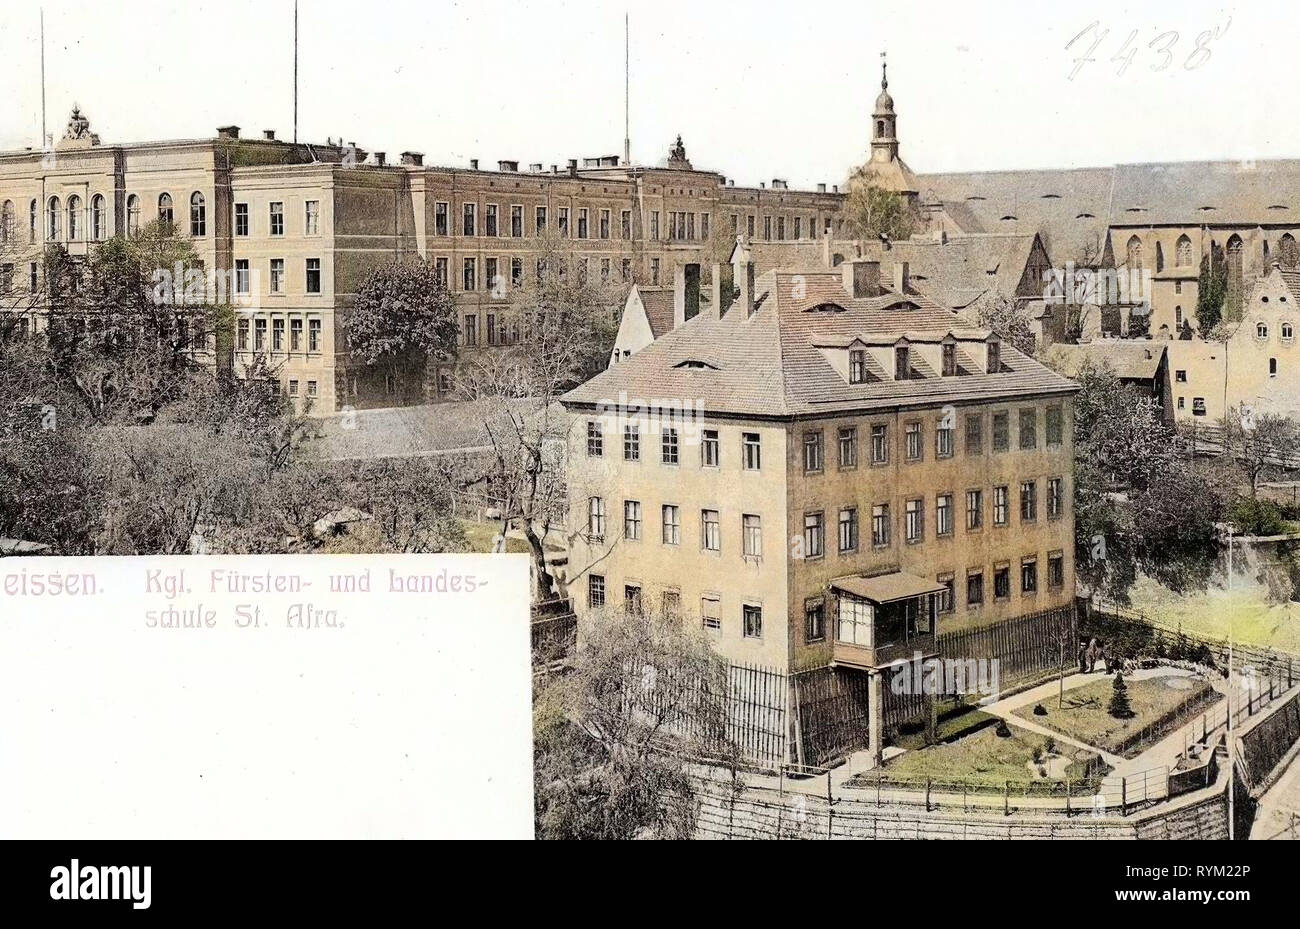 Saxon Landesgymnasium Sankt Afra, 1906, Meißen, Königliche Fürsten, und Landesschule St. l'AFRA, Allemagne Banque D'Images